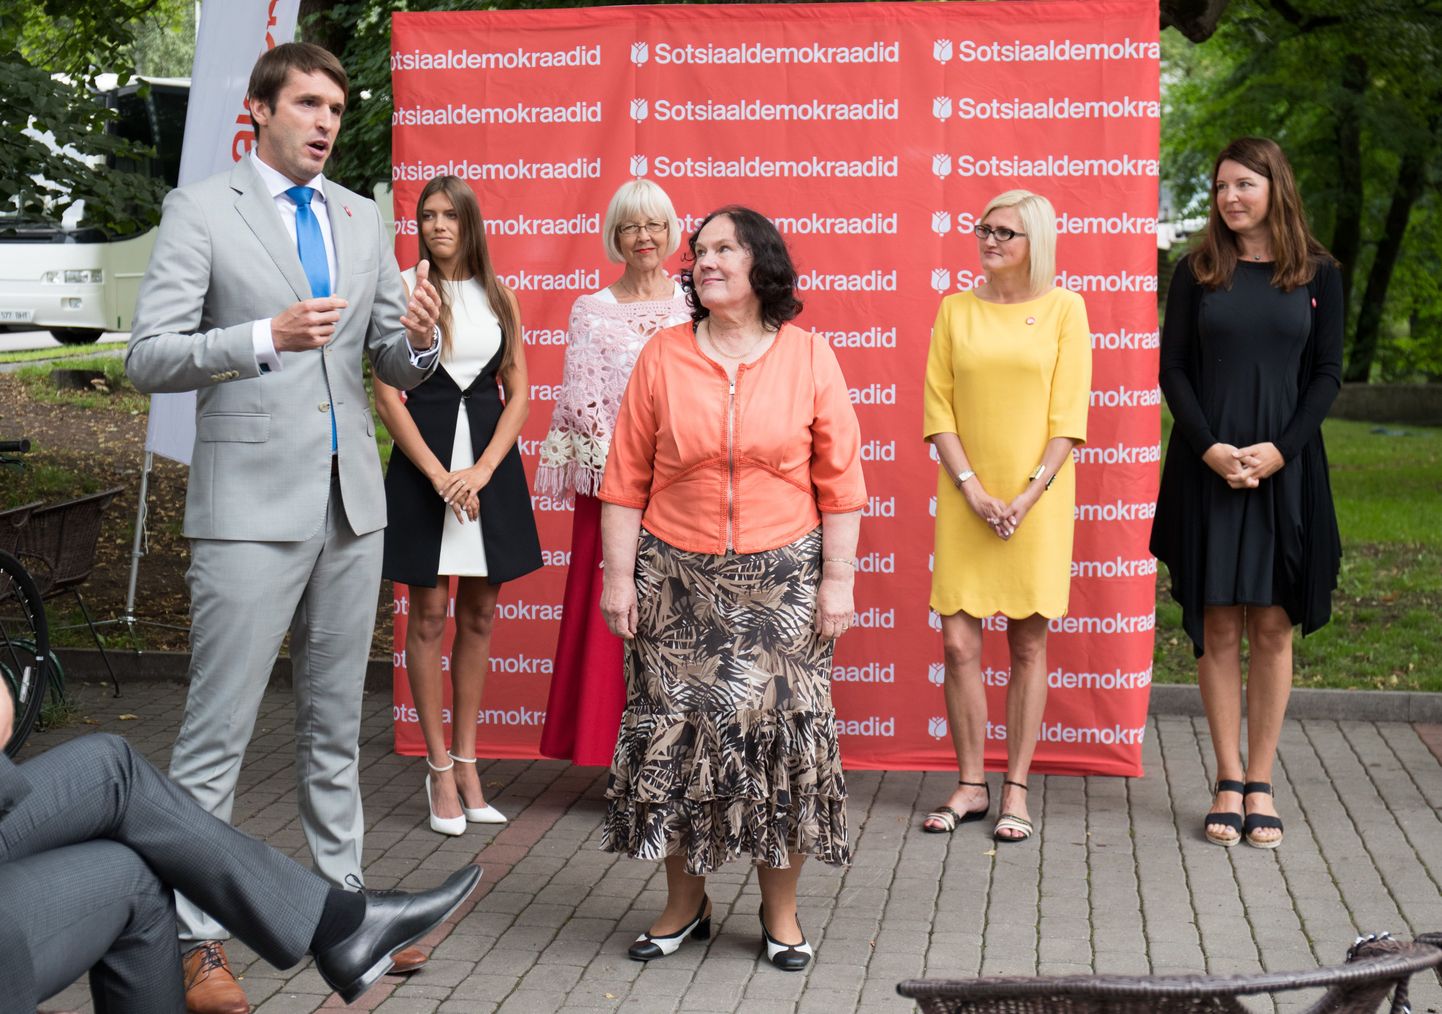 Sotsiaaldemokraadid esitasid Tallinna linnavolikogu esimehe kandidaadiks Harju maakohtu endise juhi Helle Särgava.